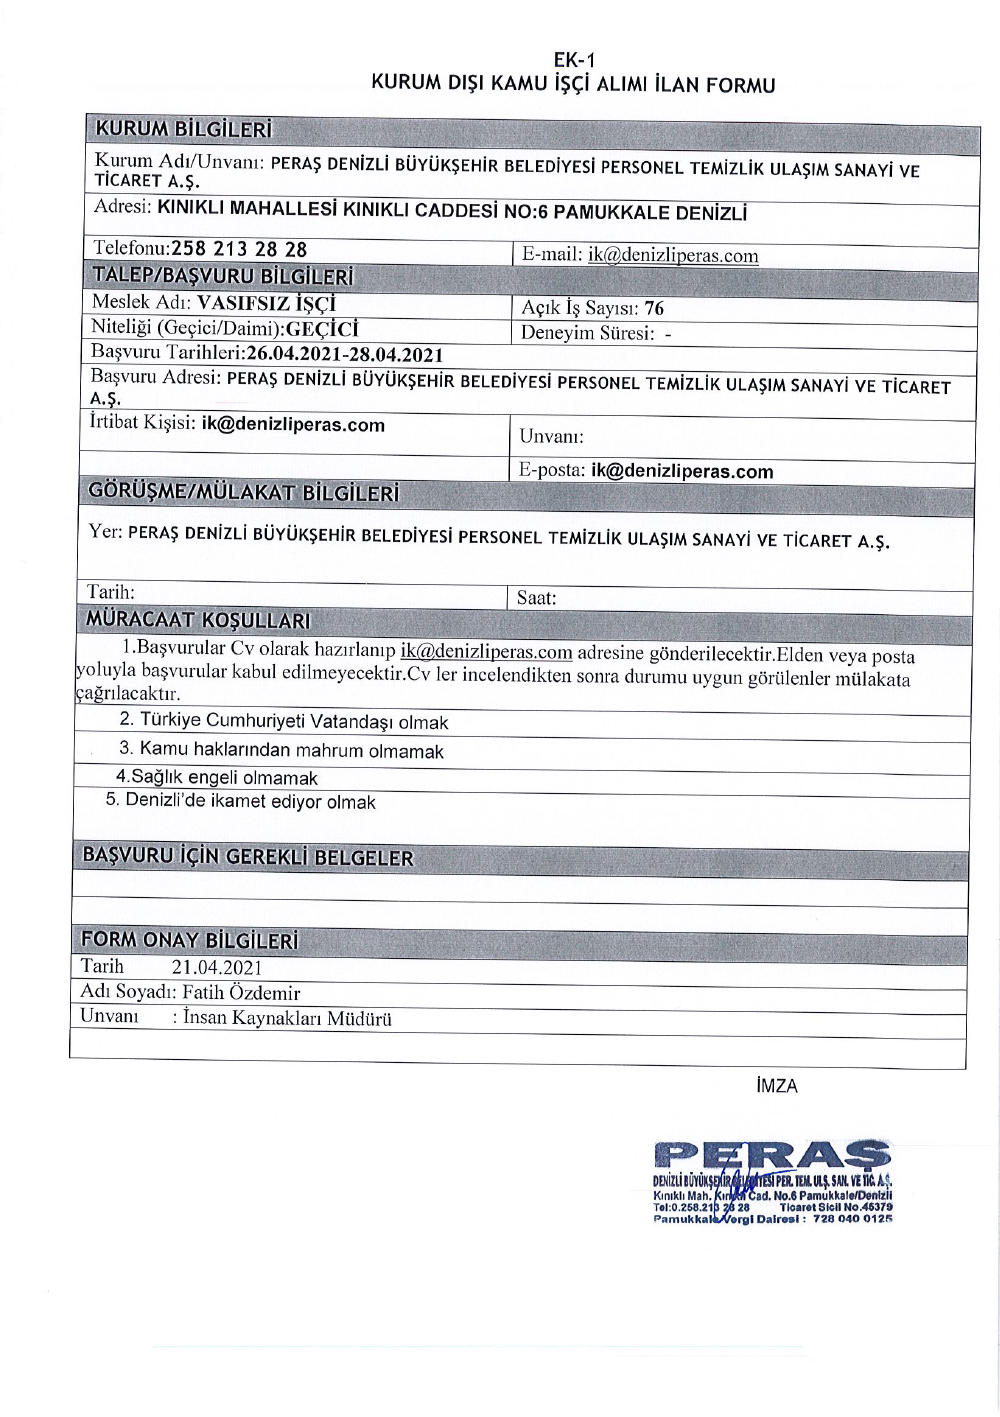 denizli-peras-tic-a-s-28-04-2021-000001.png